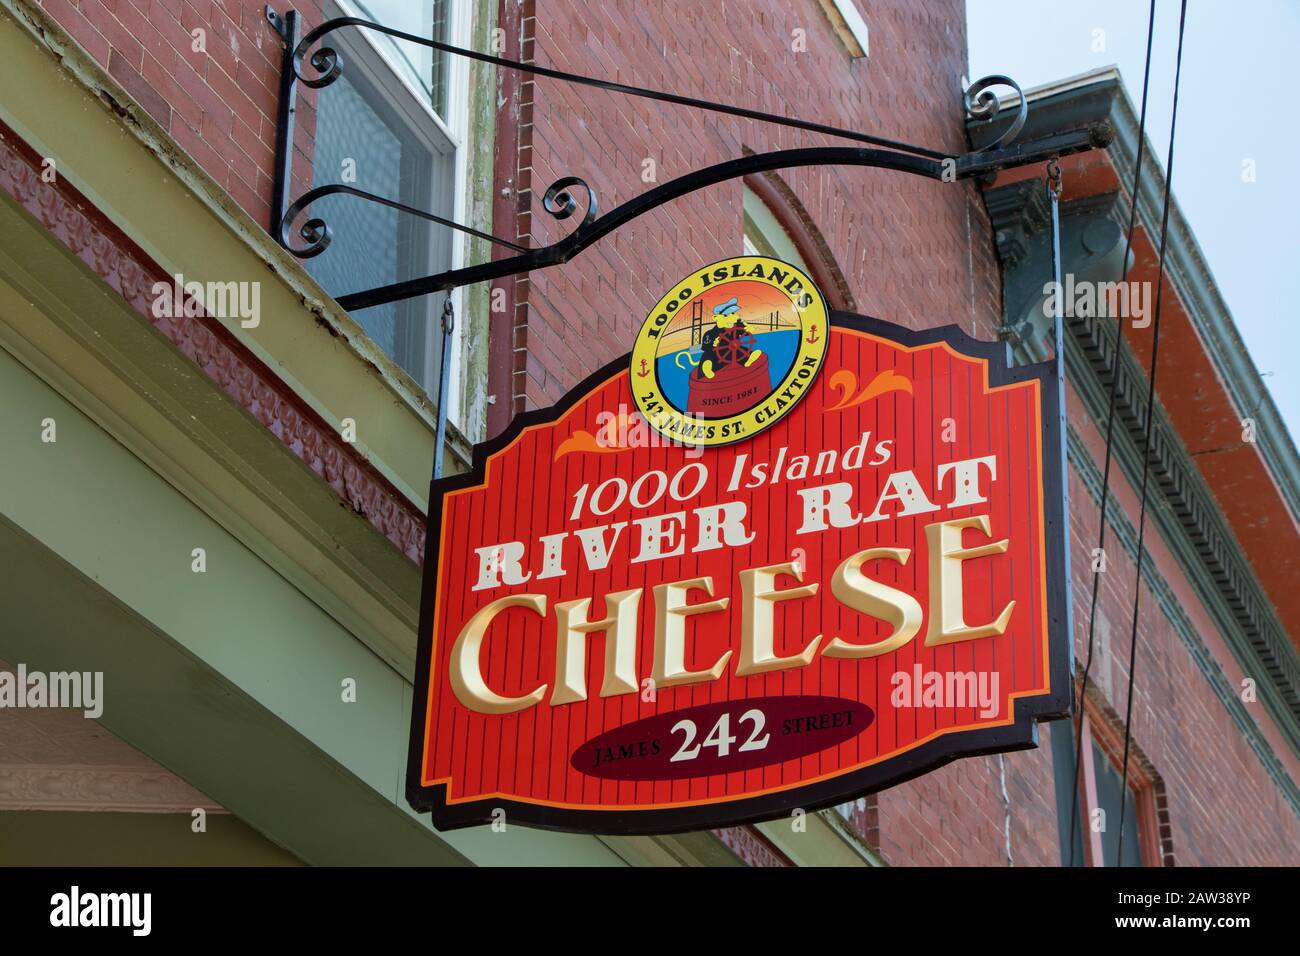 26 Juillet 2019 - Ville De Clayton, Ny, États-Unis : Panneau En Bois De Fer De 1000 Islands River Hat Cheese Front Facade Store, Centre-Ville Banque D'Images